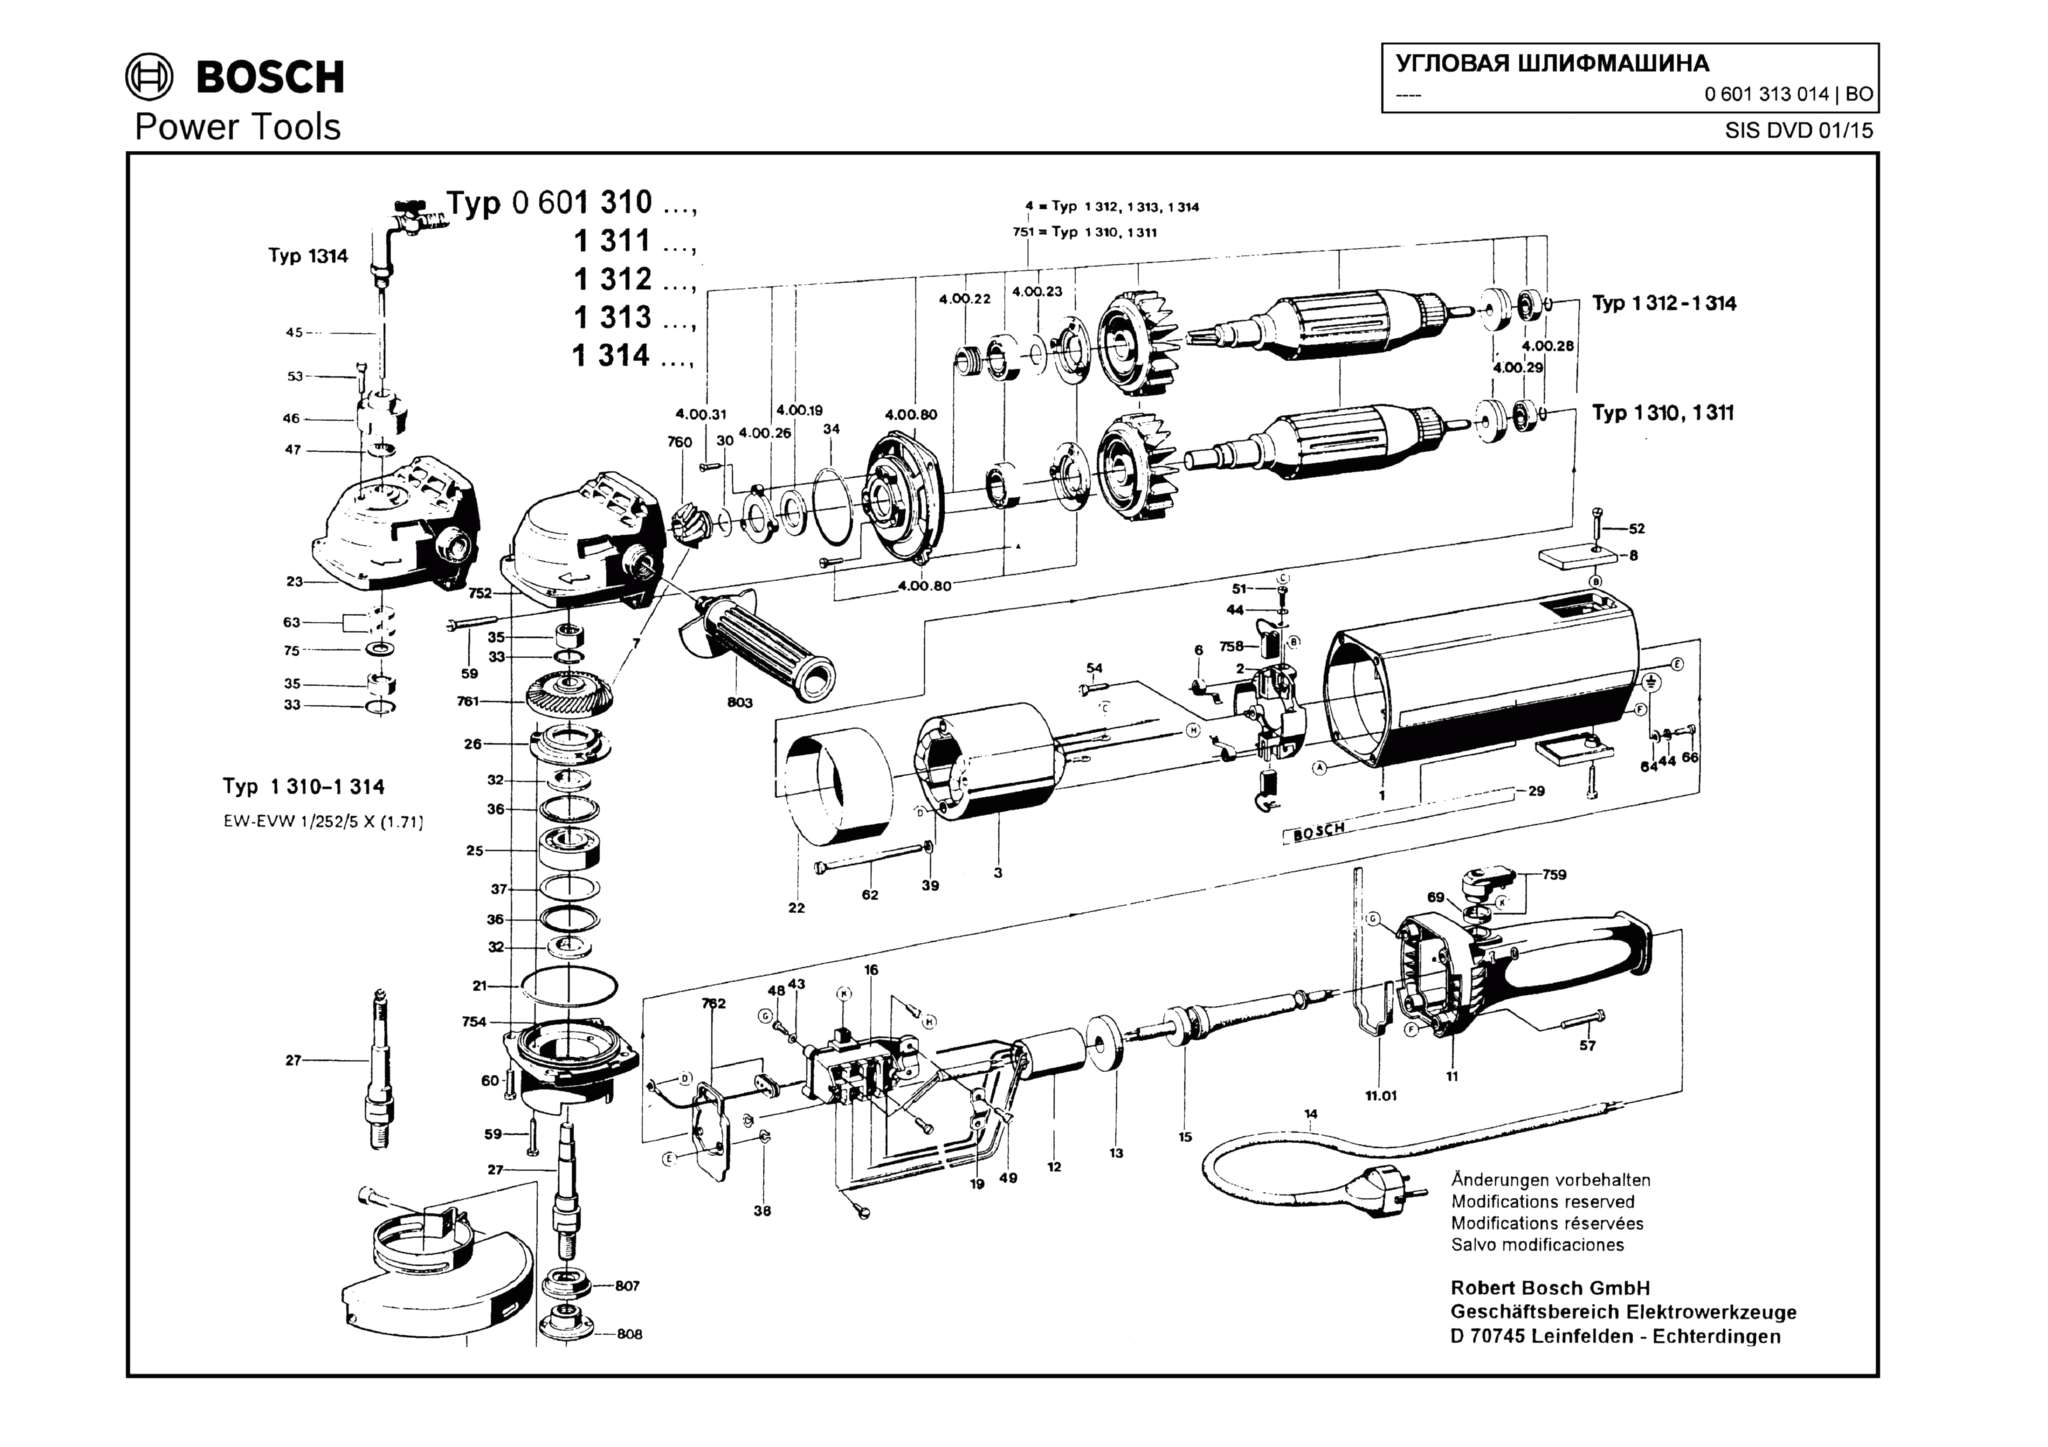 Запчасти, схема и деталировка Bosch (ТИП 0601313014)